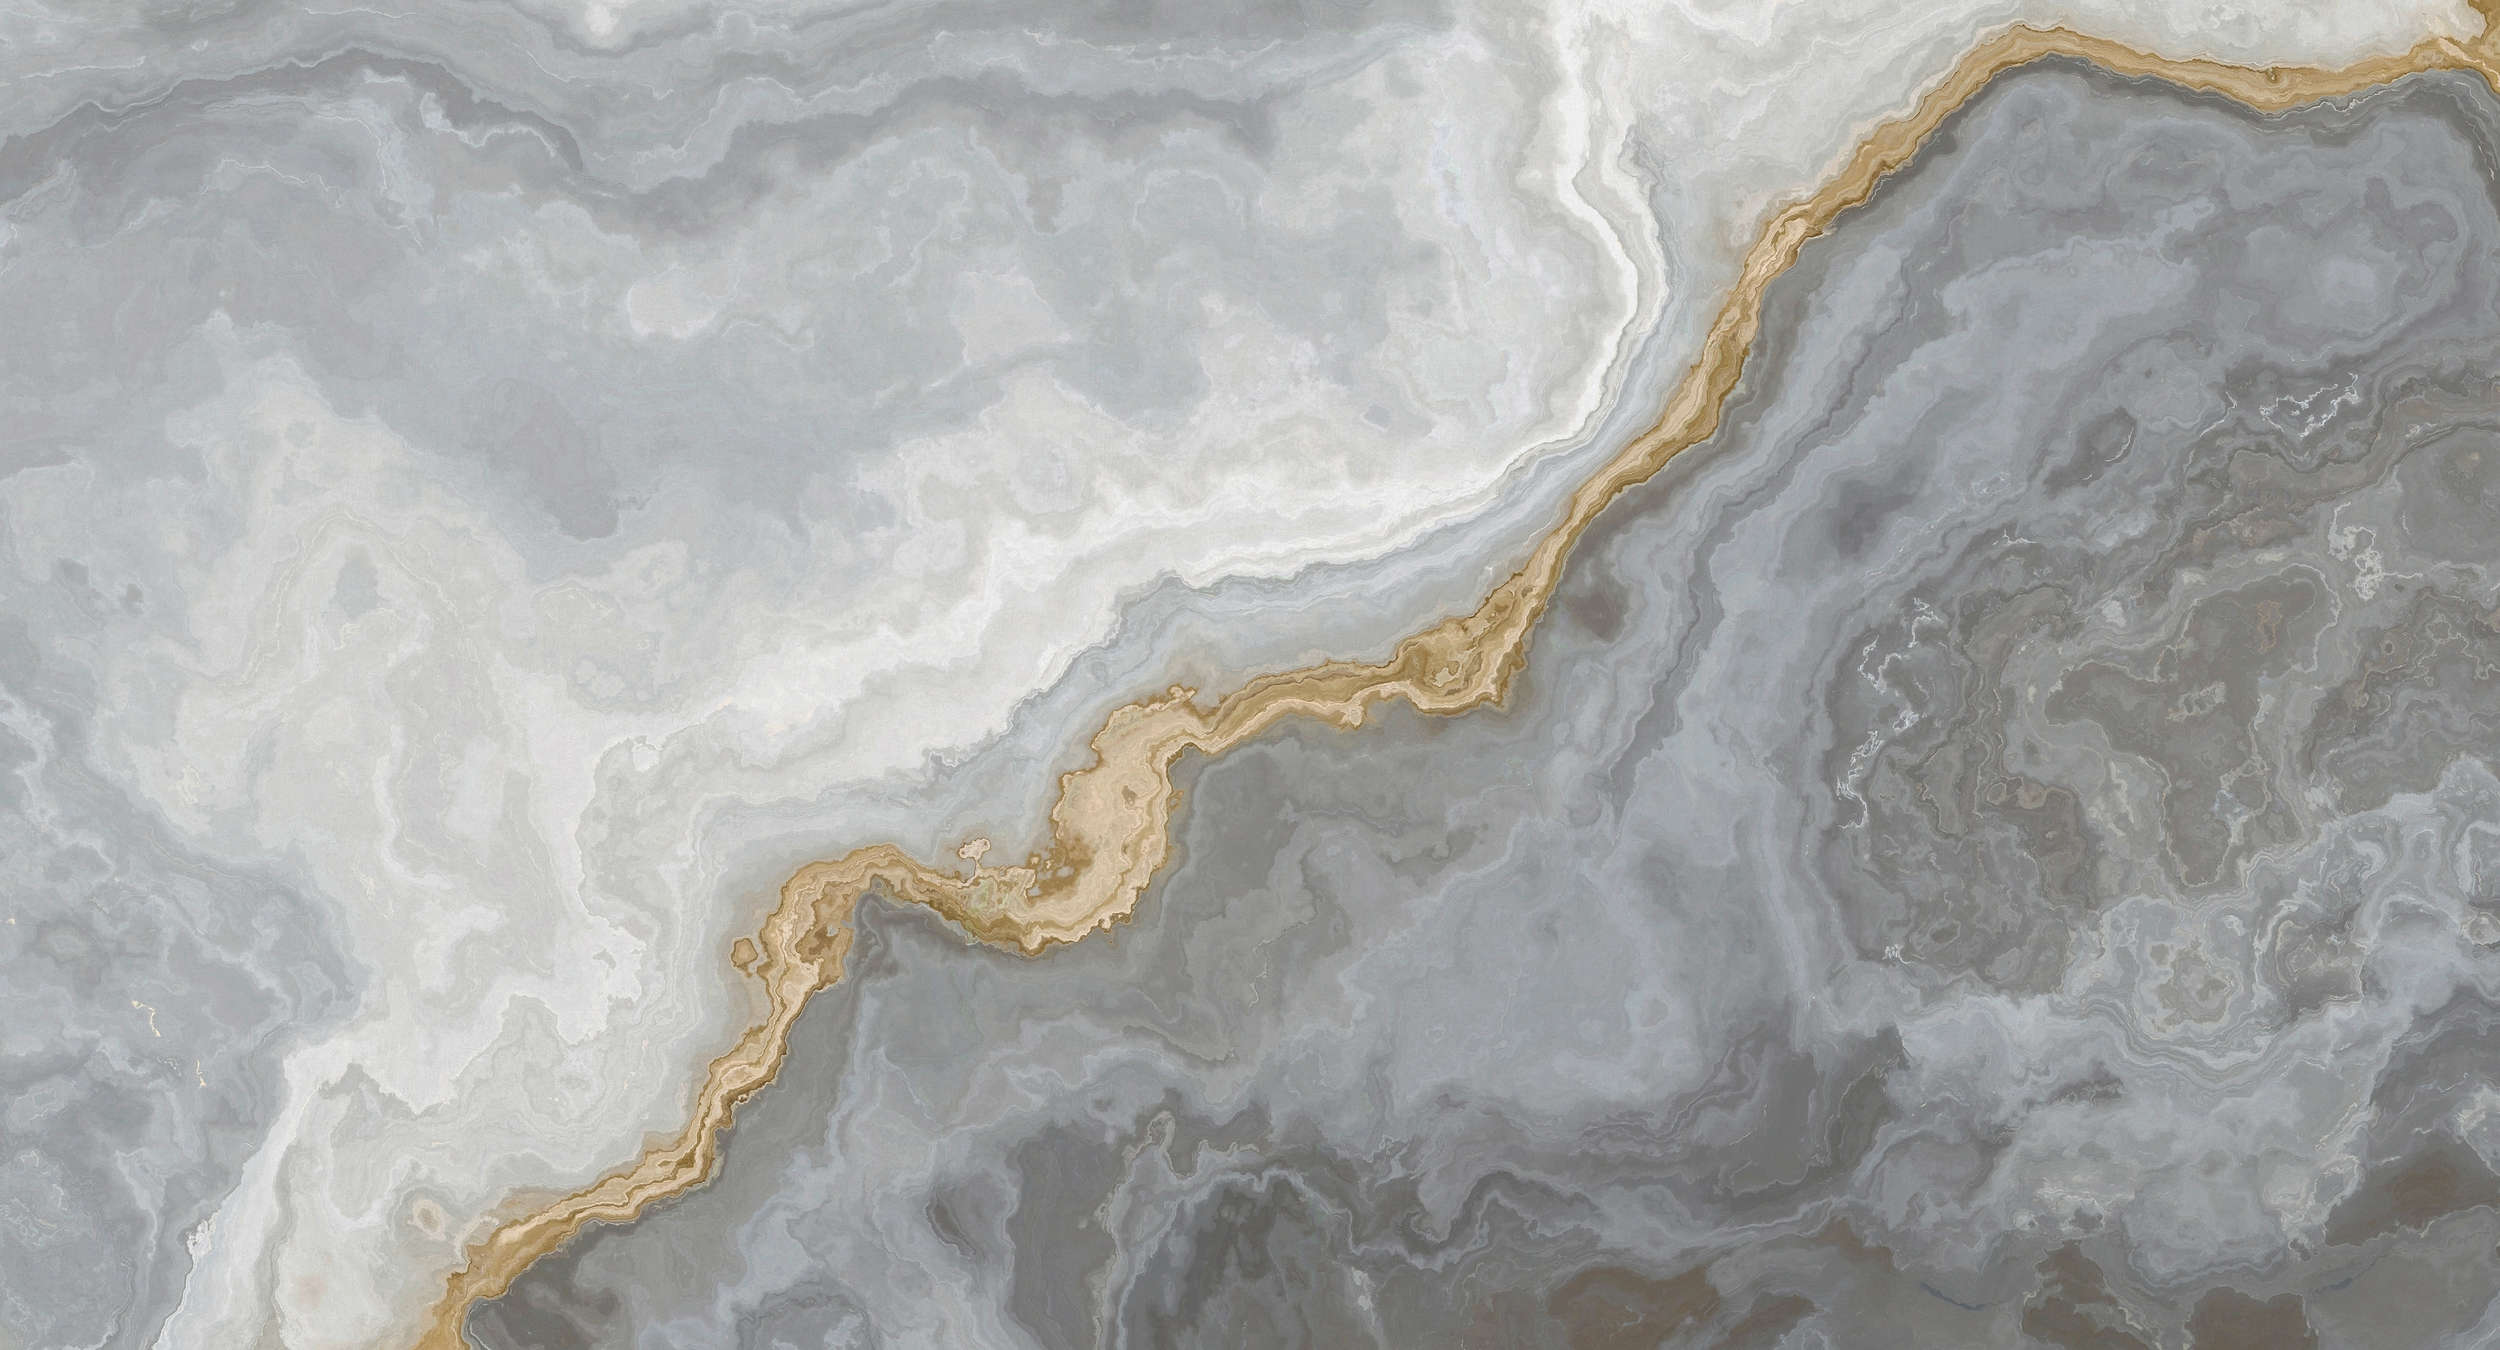             Fototapete Steinoptik Quarz mit Marmorierung – Gelb, Grau, Weiß
        